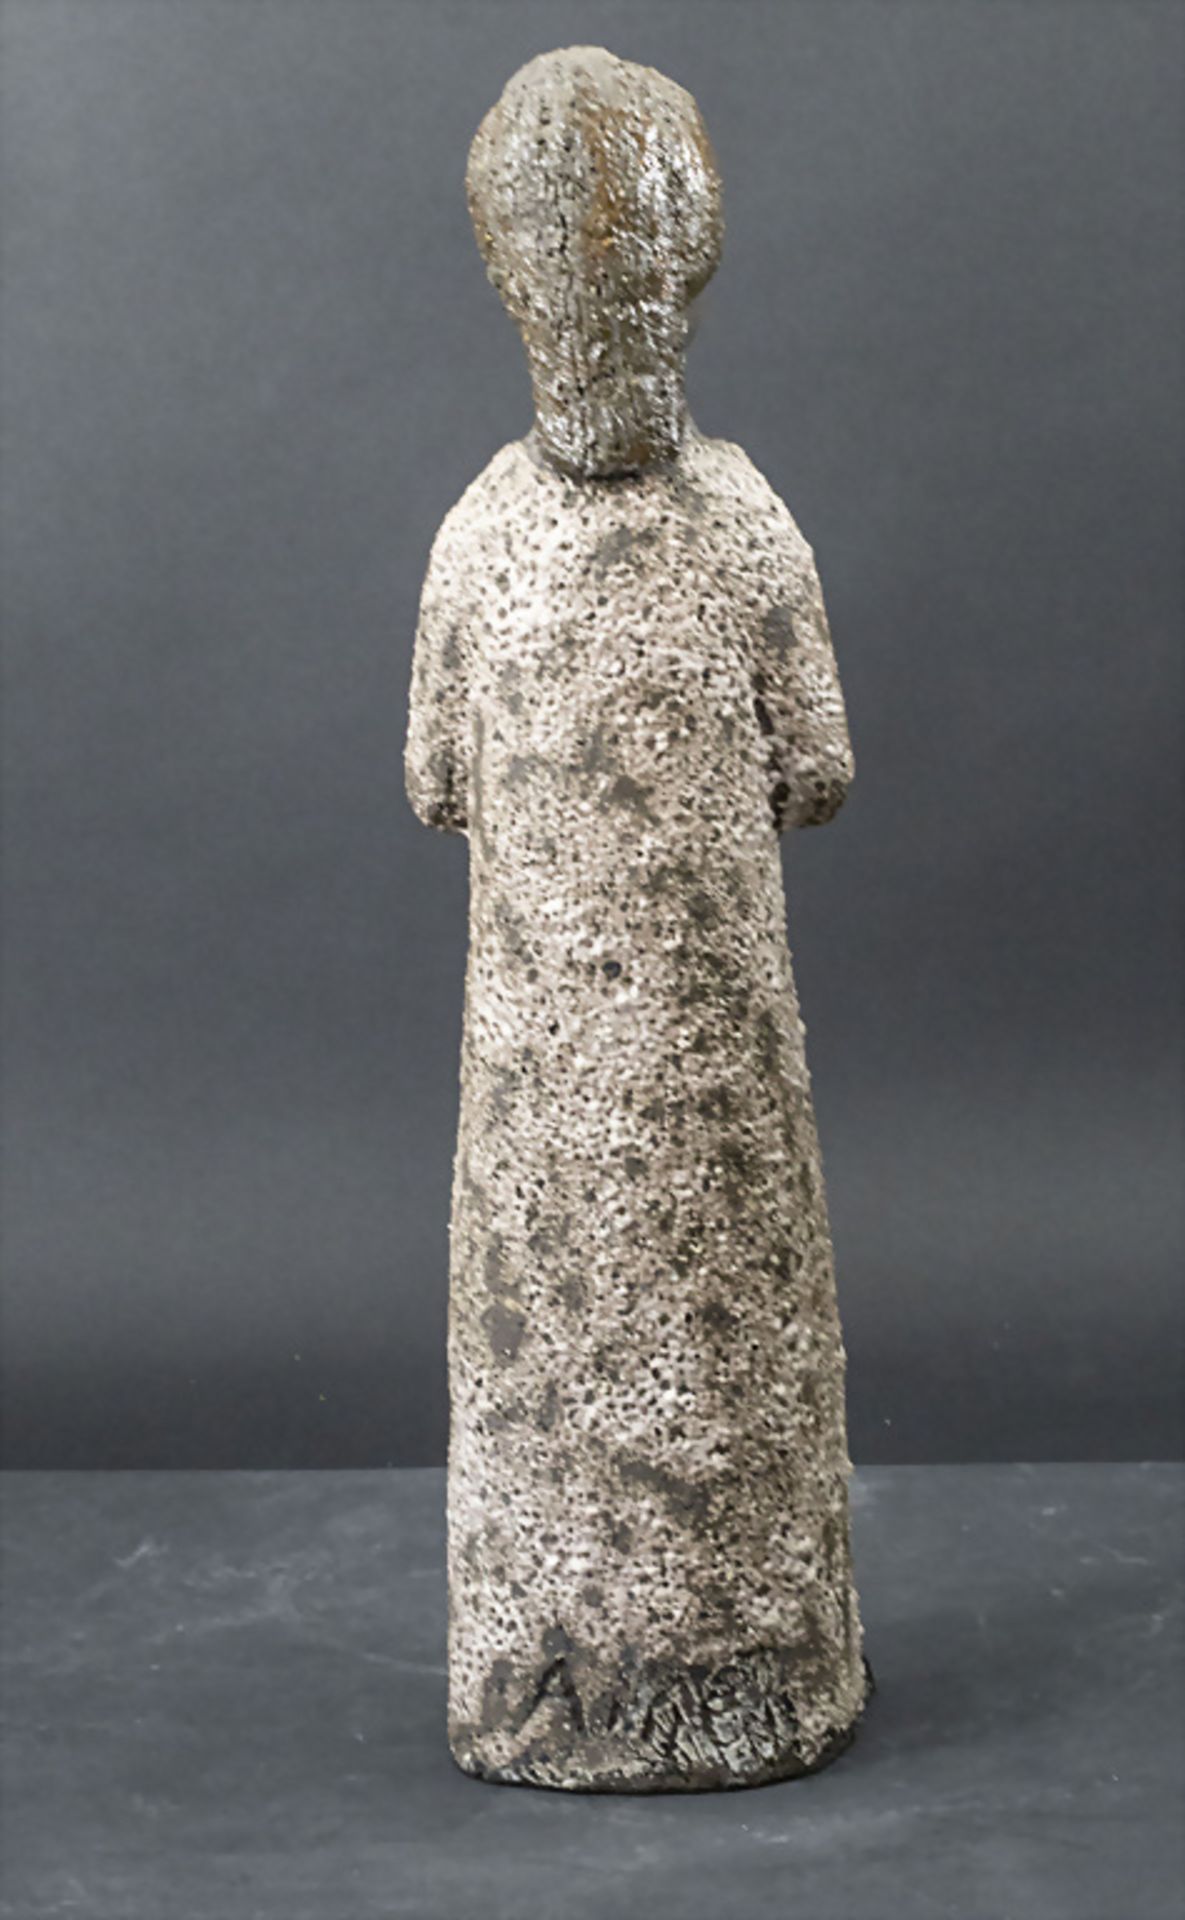 Künstlerkeramik Plastik 'Frau mit Tauben' / An artist ceramic sculpture 'Woman with pigeons', ... - Bild 4 aus 5